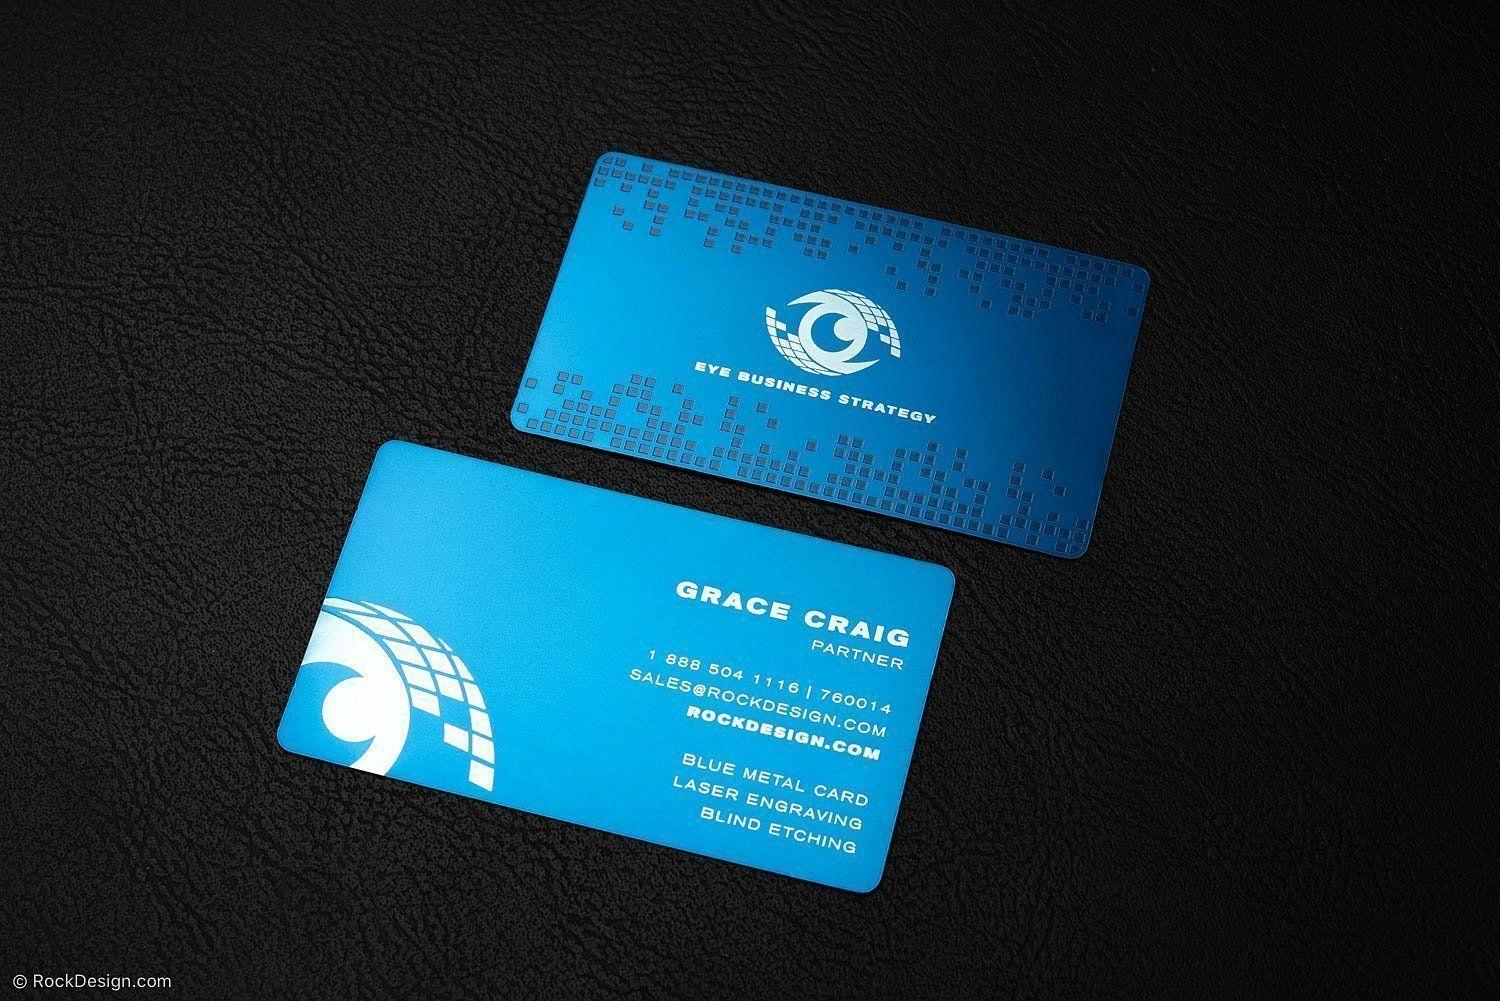 Blue Metal Logo - Pixel Patterned Laser Engraved Blue Metal Business Card Template ...